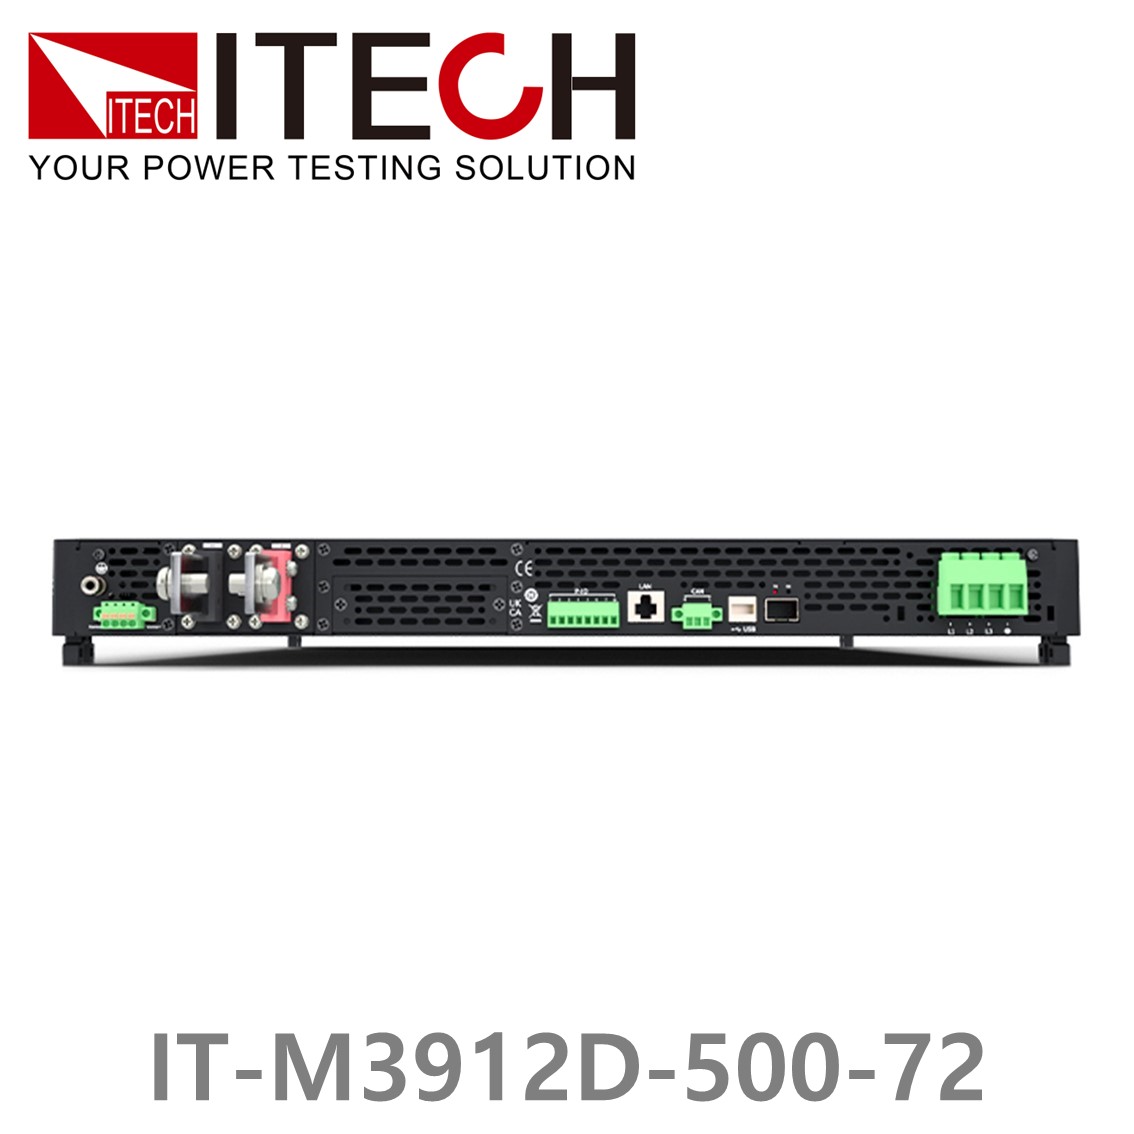 [ ITECH ] IT-M3912D-500-72 양방향 프로그래머블 DC전원공급기, DC파워서플라이